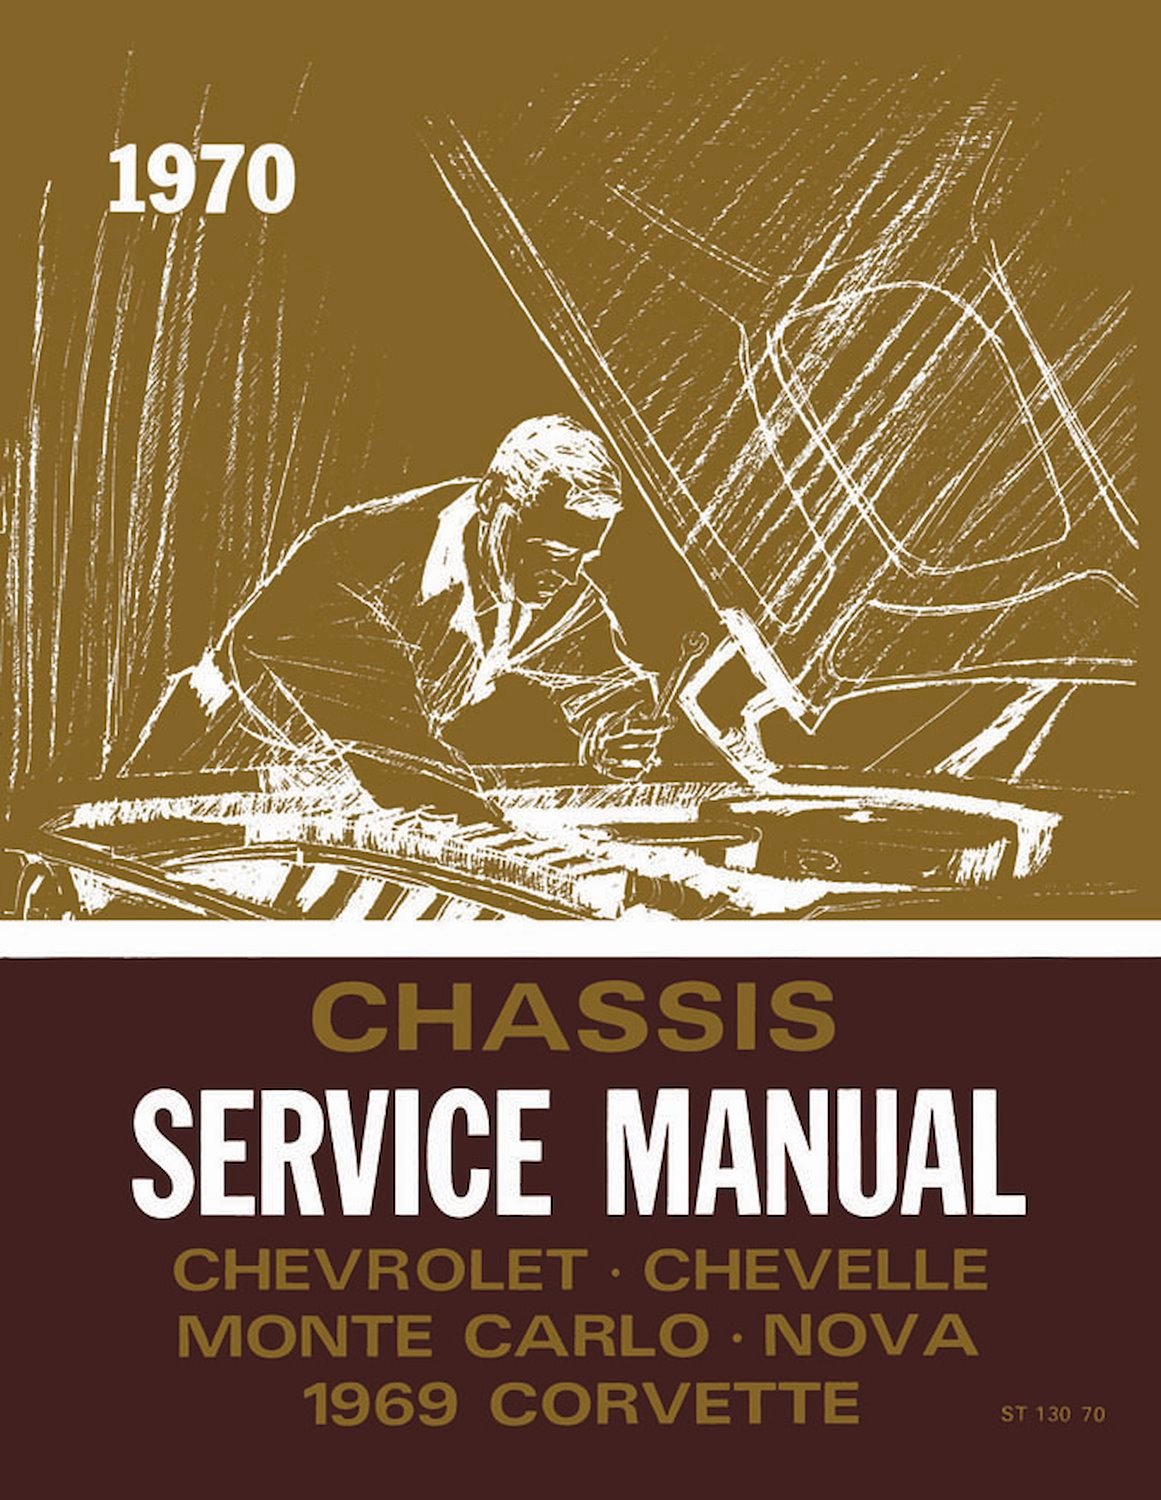 Chassis Service Manual for 1969 Chevrolet Corvette, 1970 Chevrolet Full Size, Chevelle, El Camino, Monte Carlo, Nova